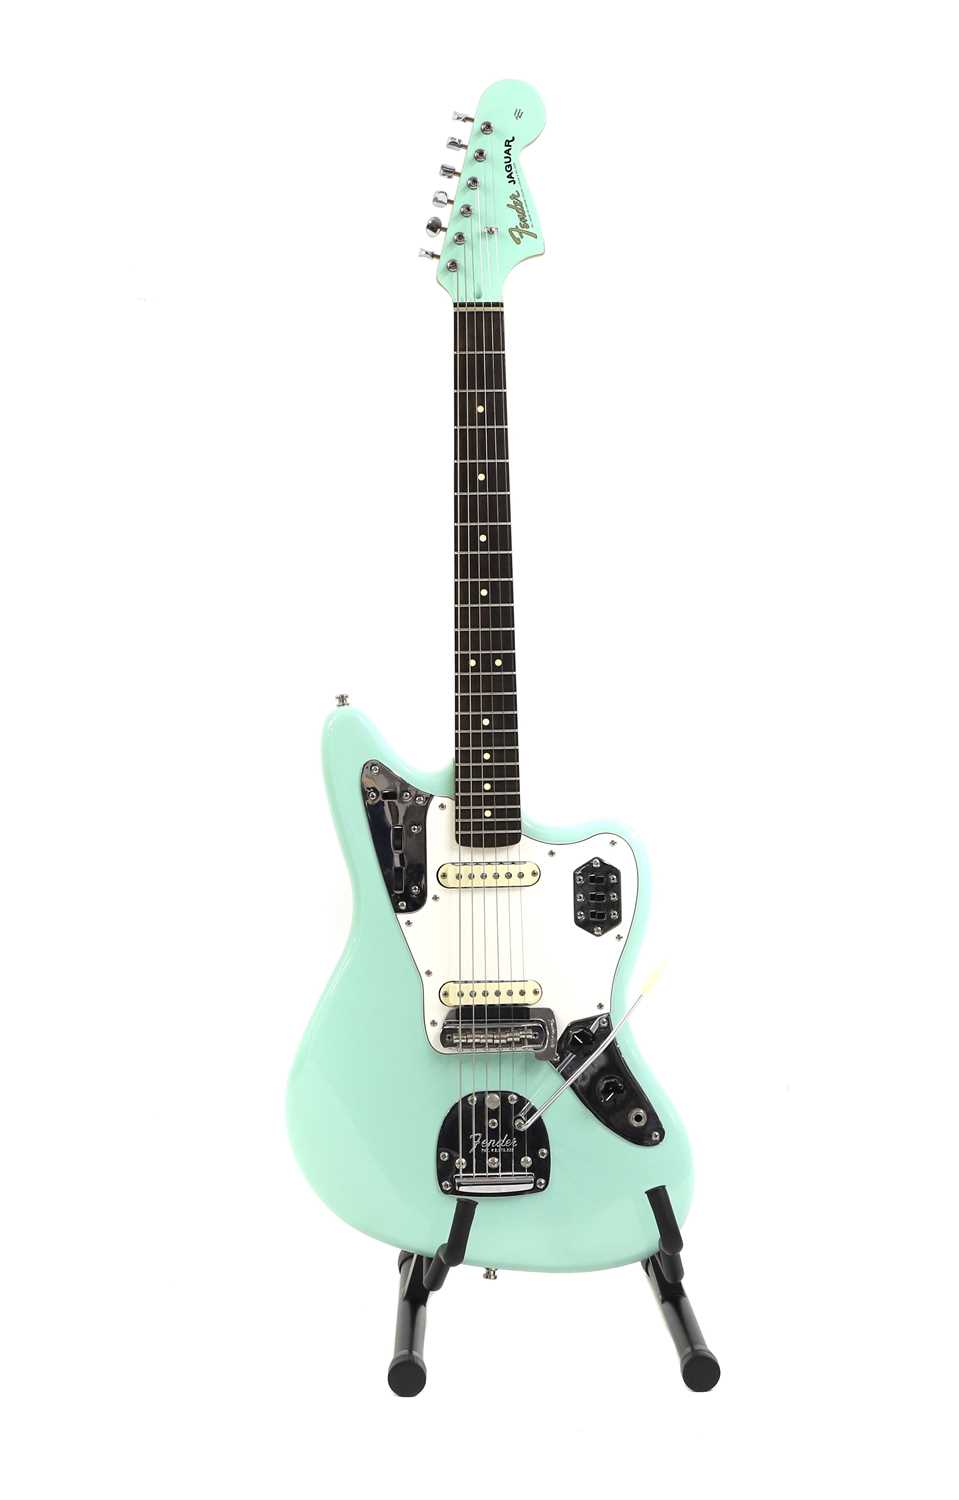 A Fender Jaguar electric guitar,